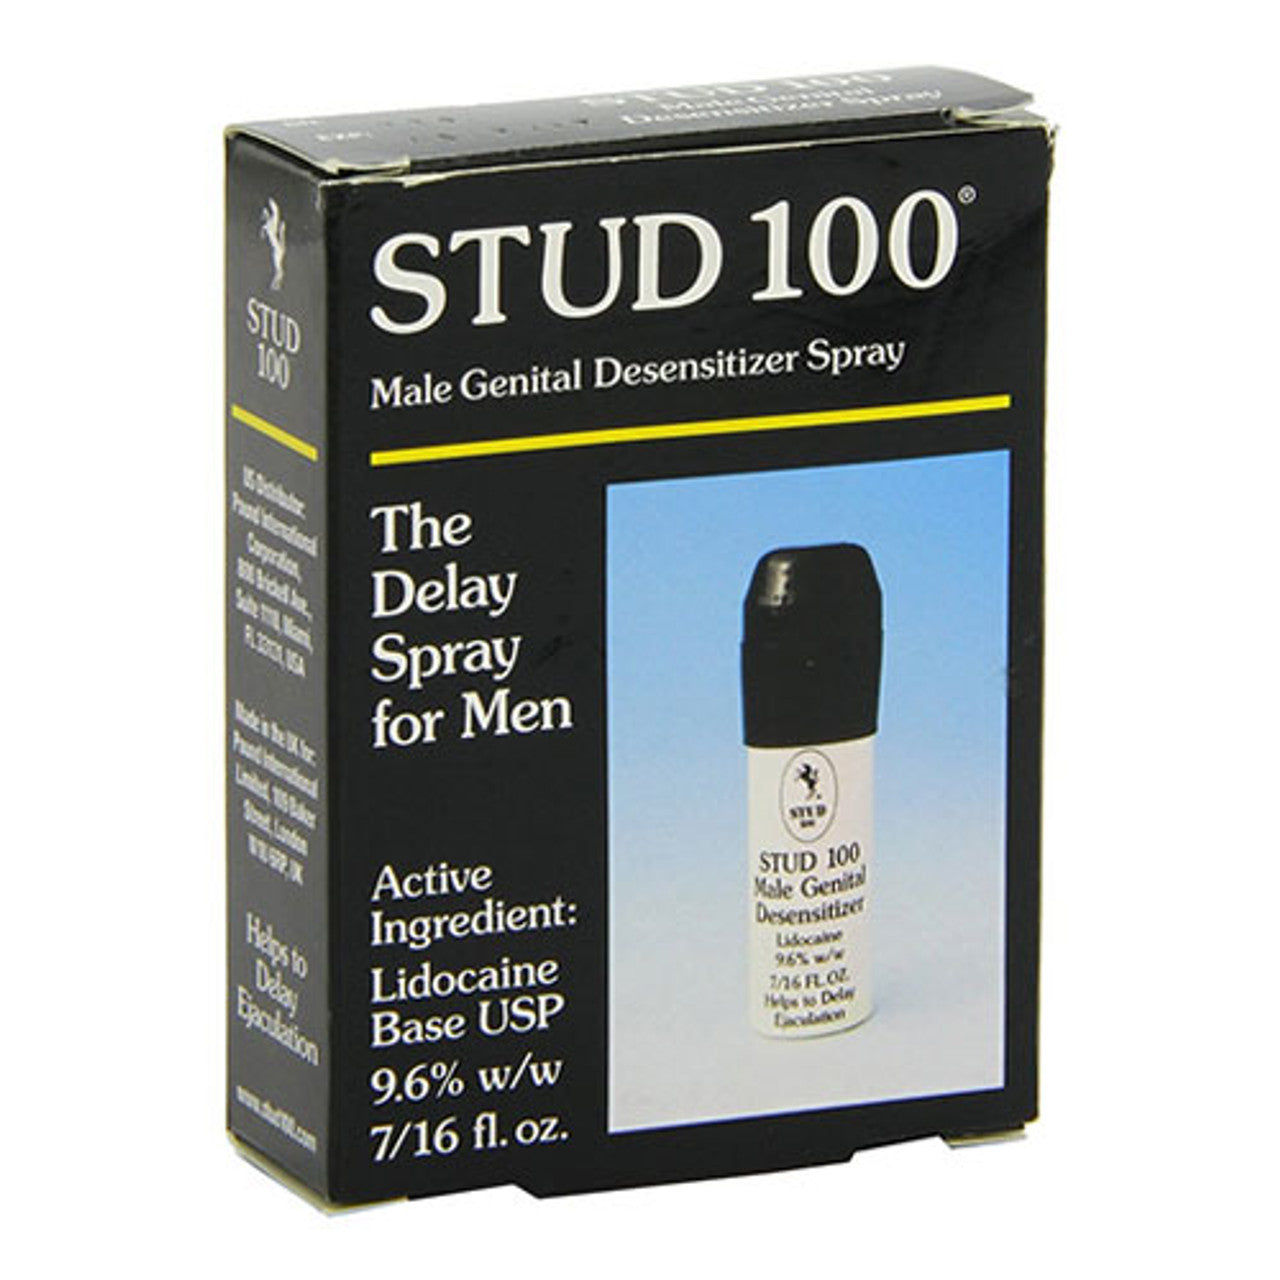 Stud 100 Desensitizing Spray For Men - 12 Gm, 3 Packs